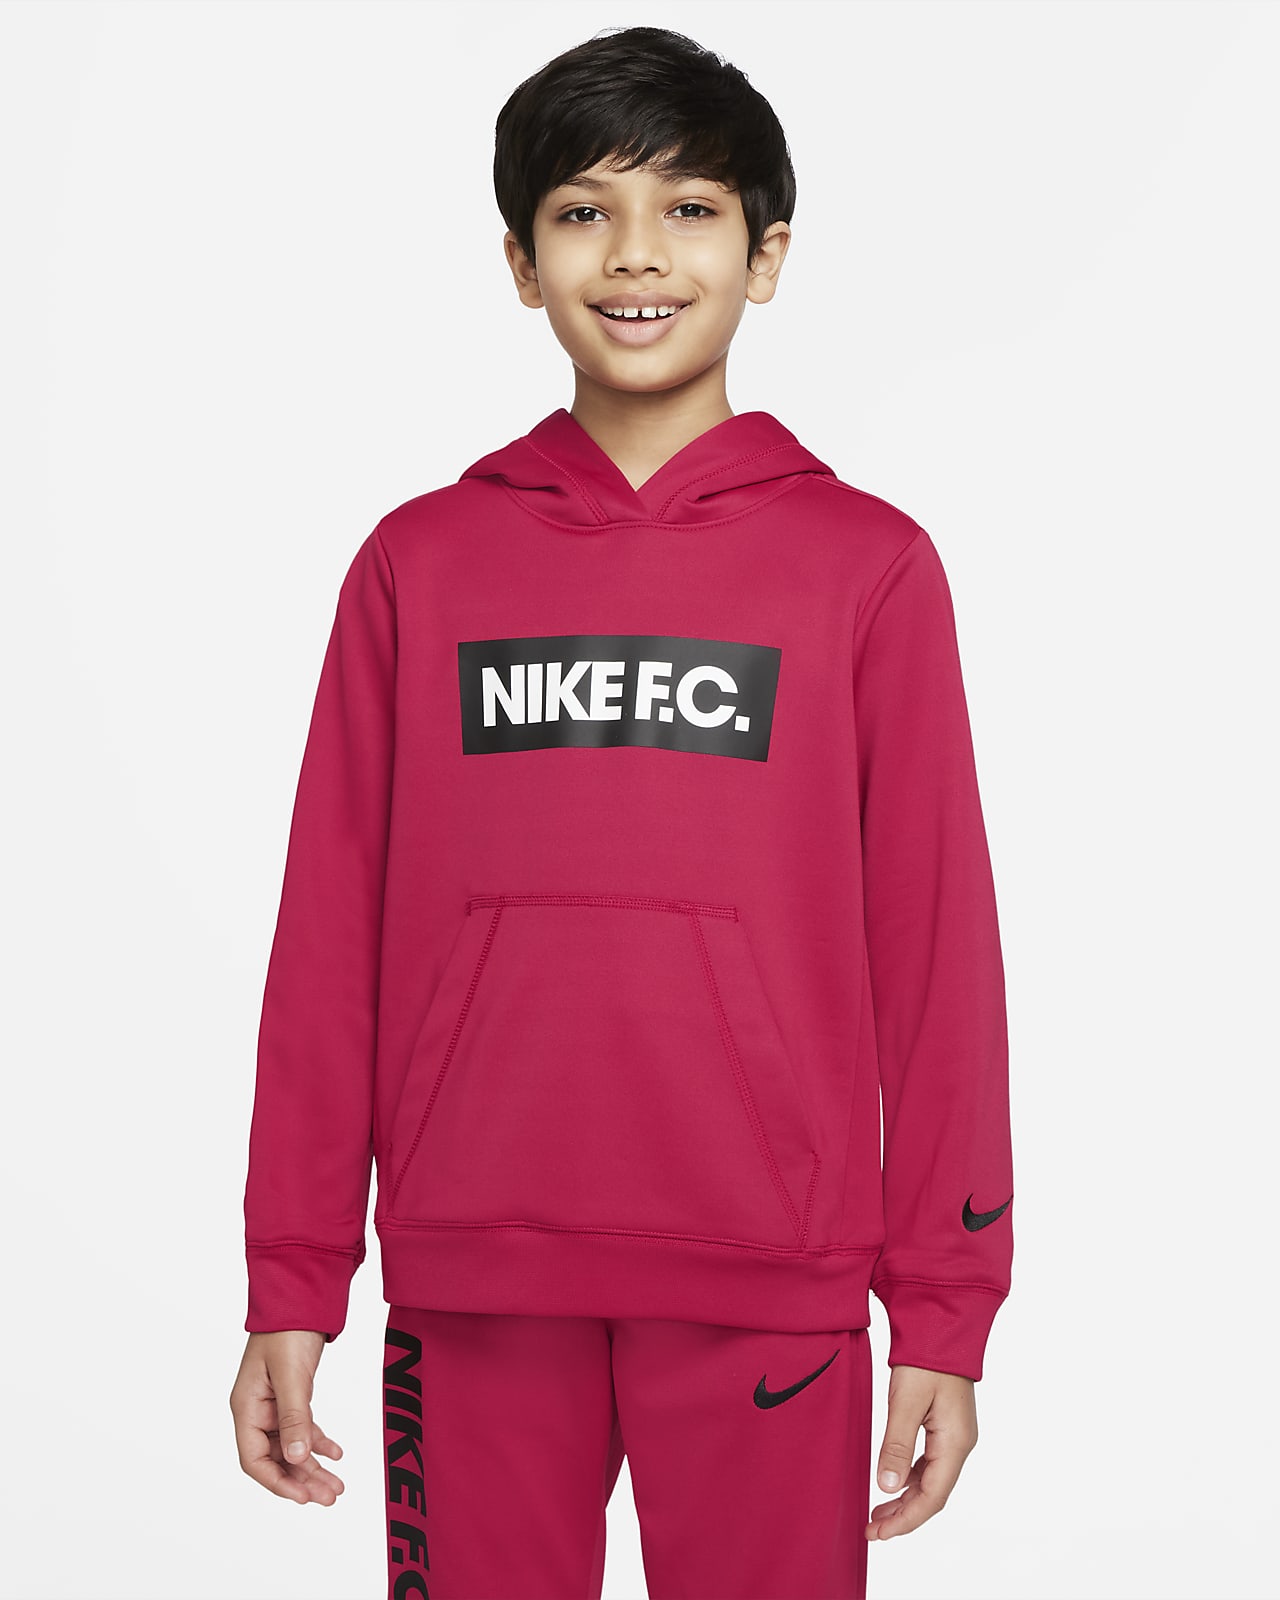 Nike F.C. Older Kids' Football Hoodie